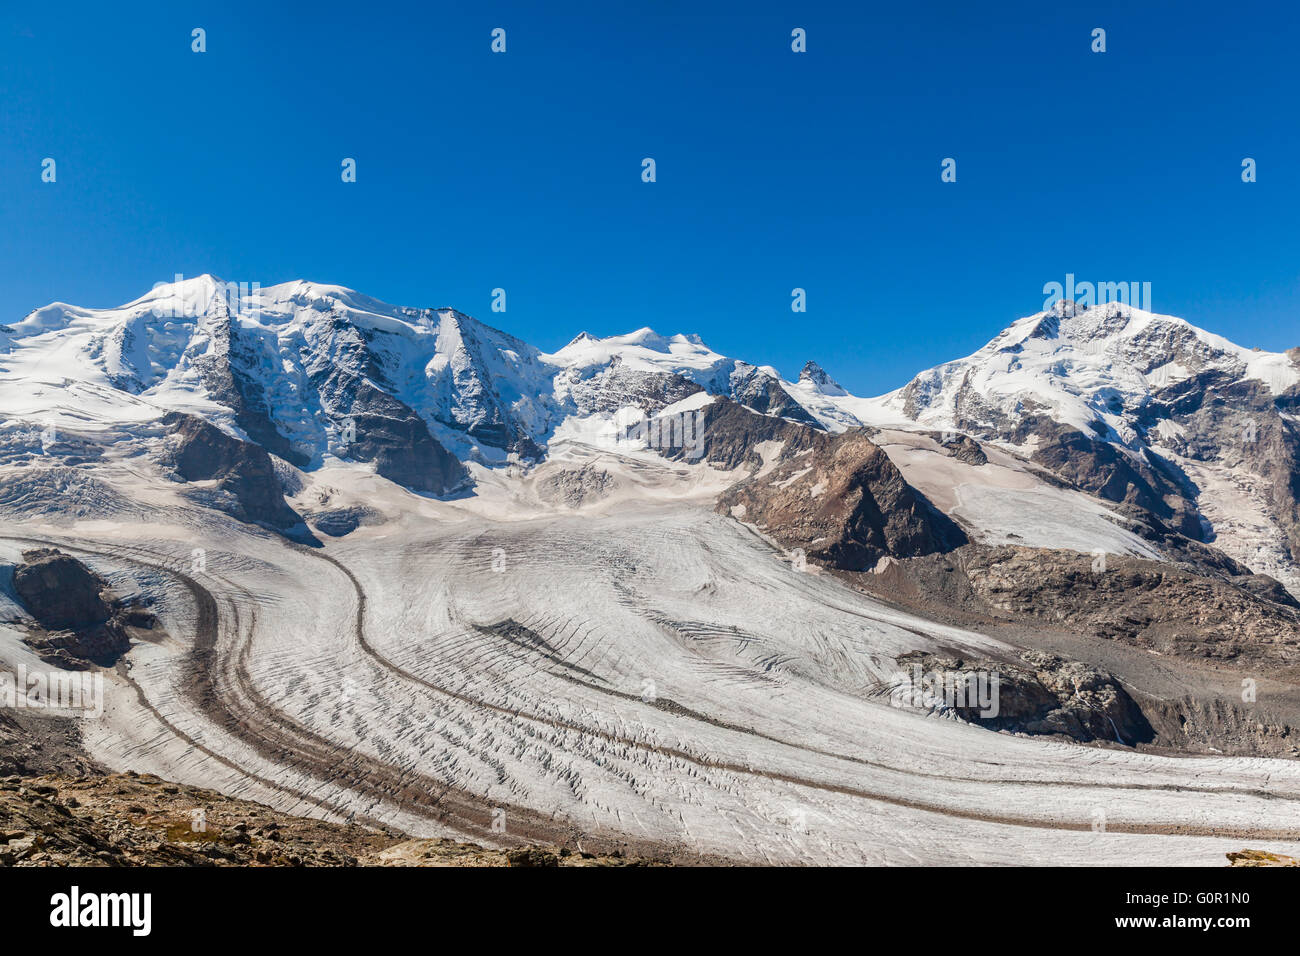 Atemberaubende Aussicht auf die Bernina-Massiv und Morteratsch-Gletscher  auf das Berghaus Diavolezza in Engadiner Gegend der Schweiz Stockfotografie  - Alamy